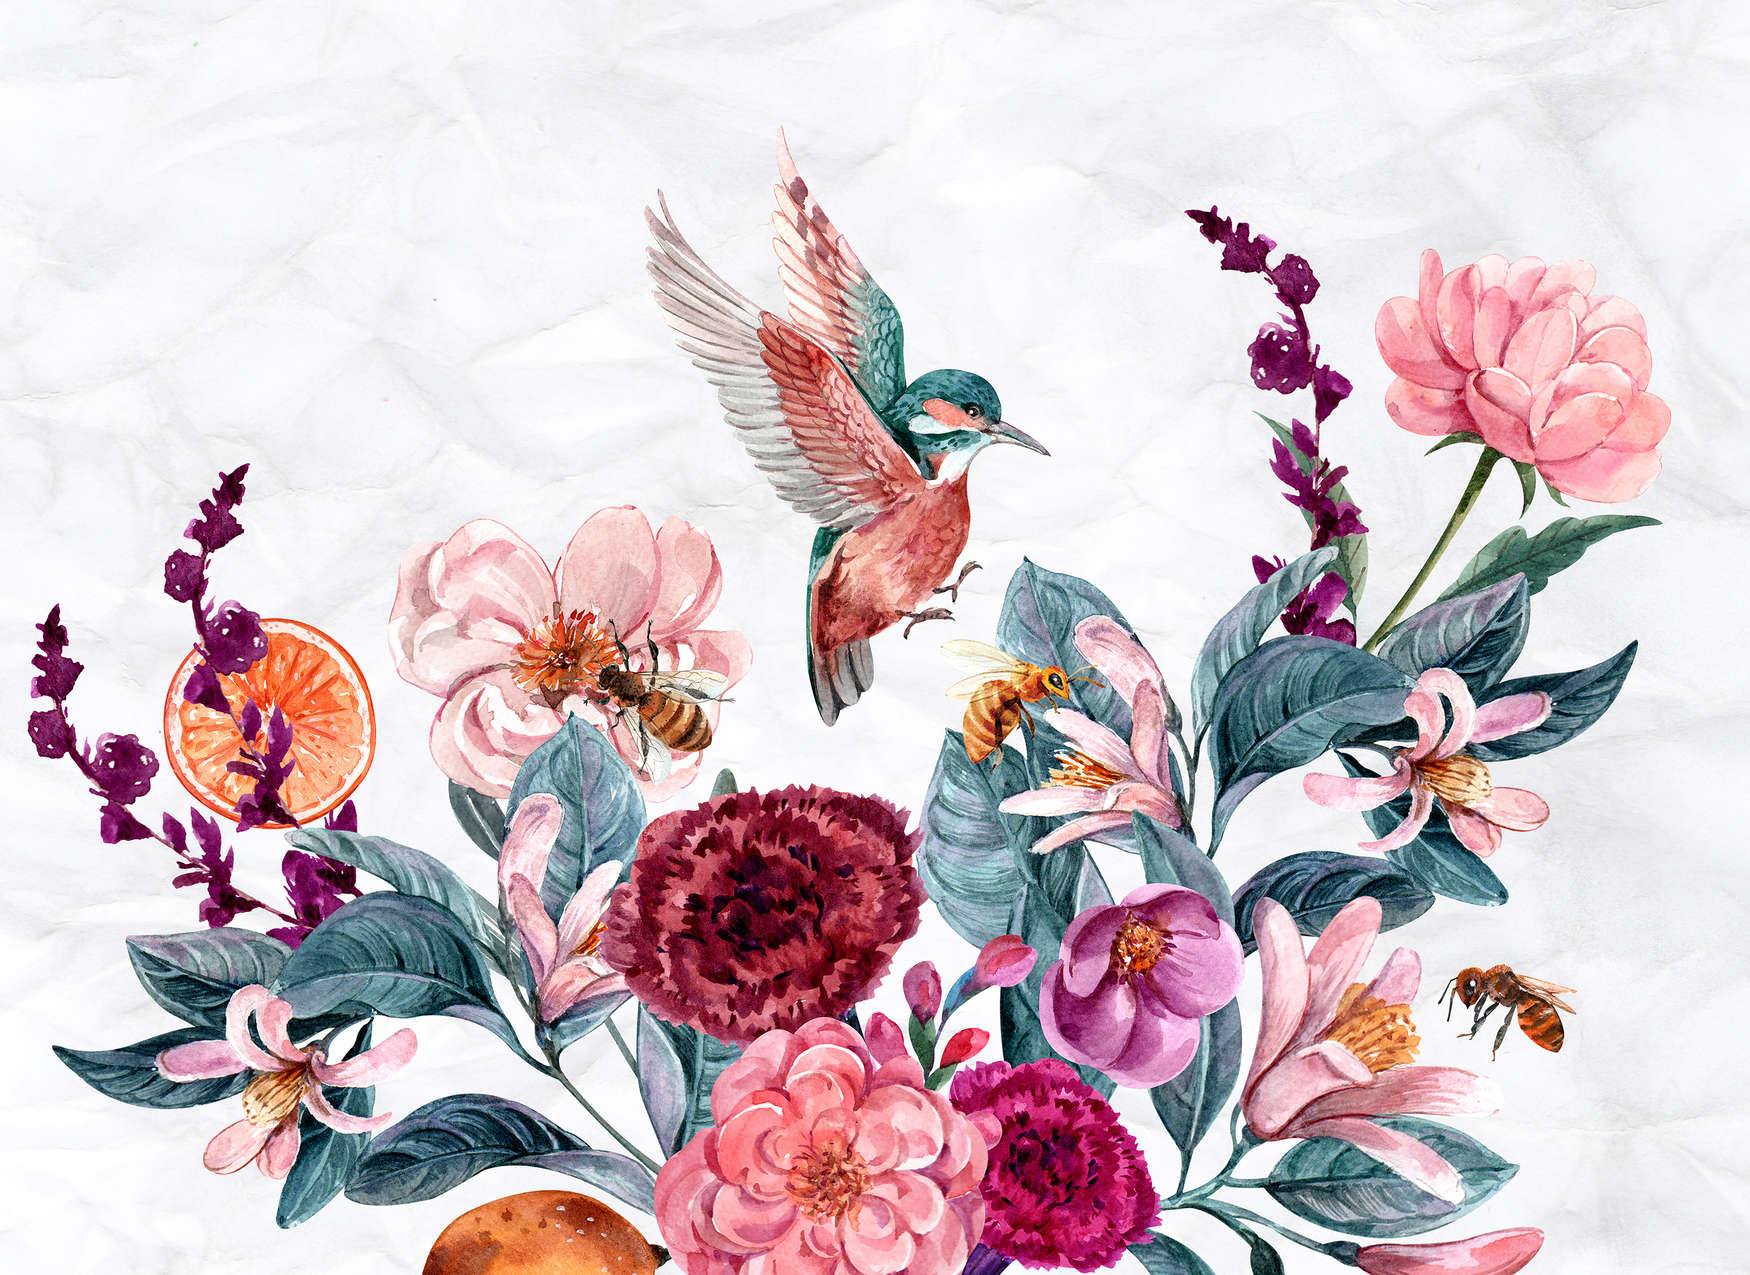             Papel pintado de flores y pájaros sobre fondo 3D - rosa, verde, blanco
        